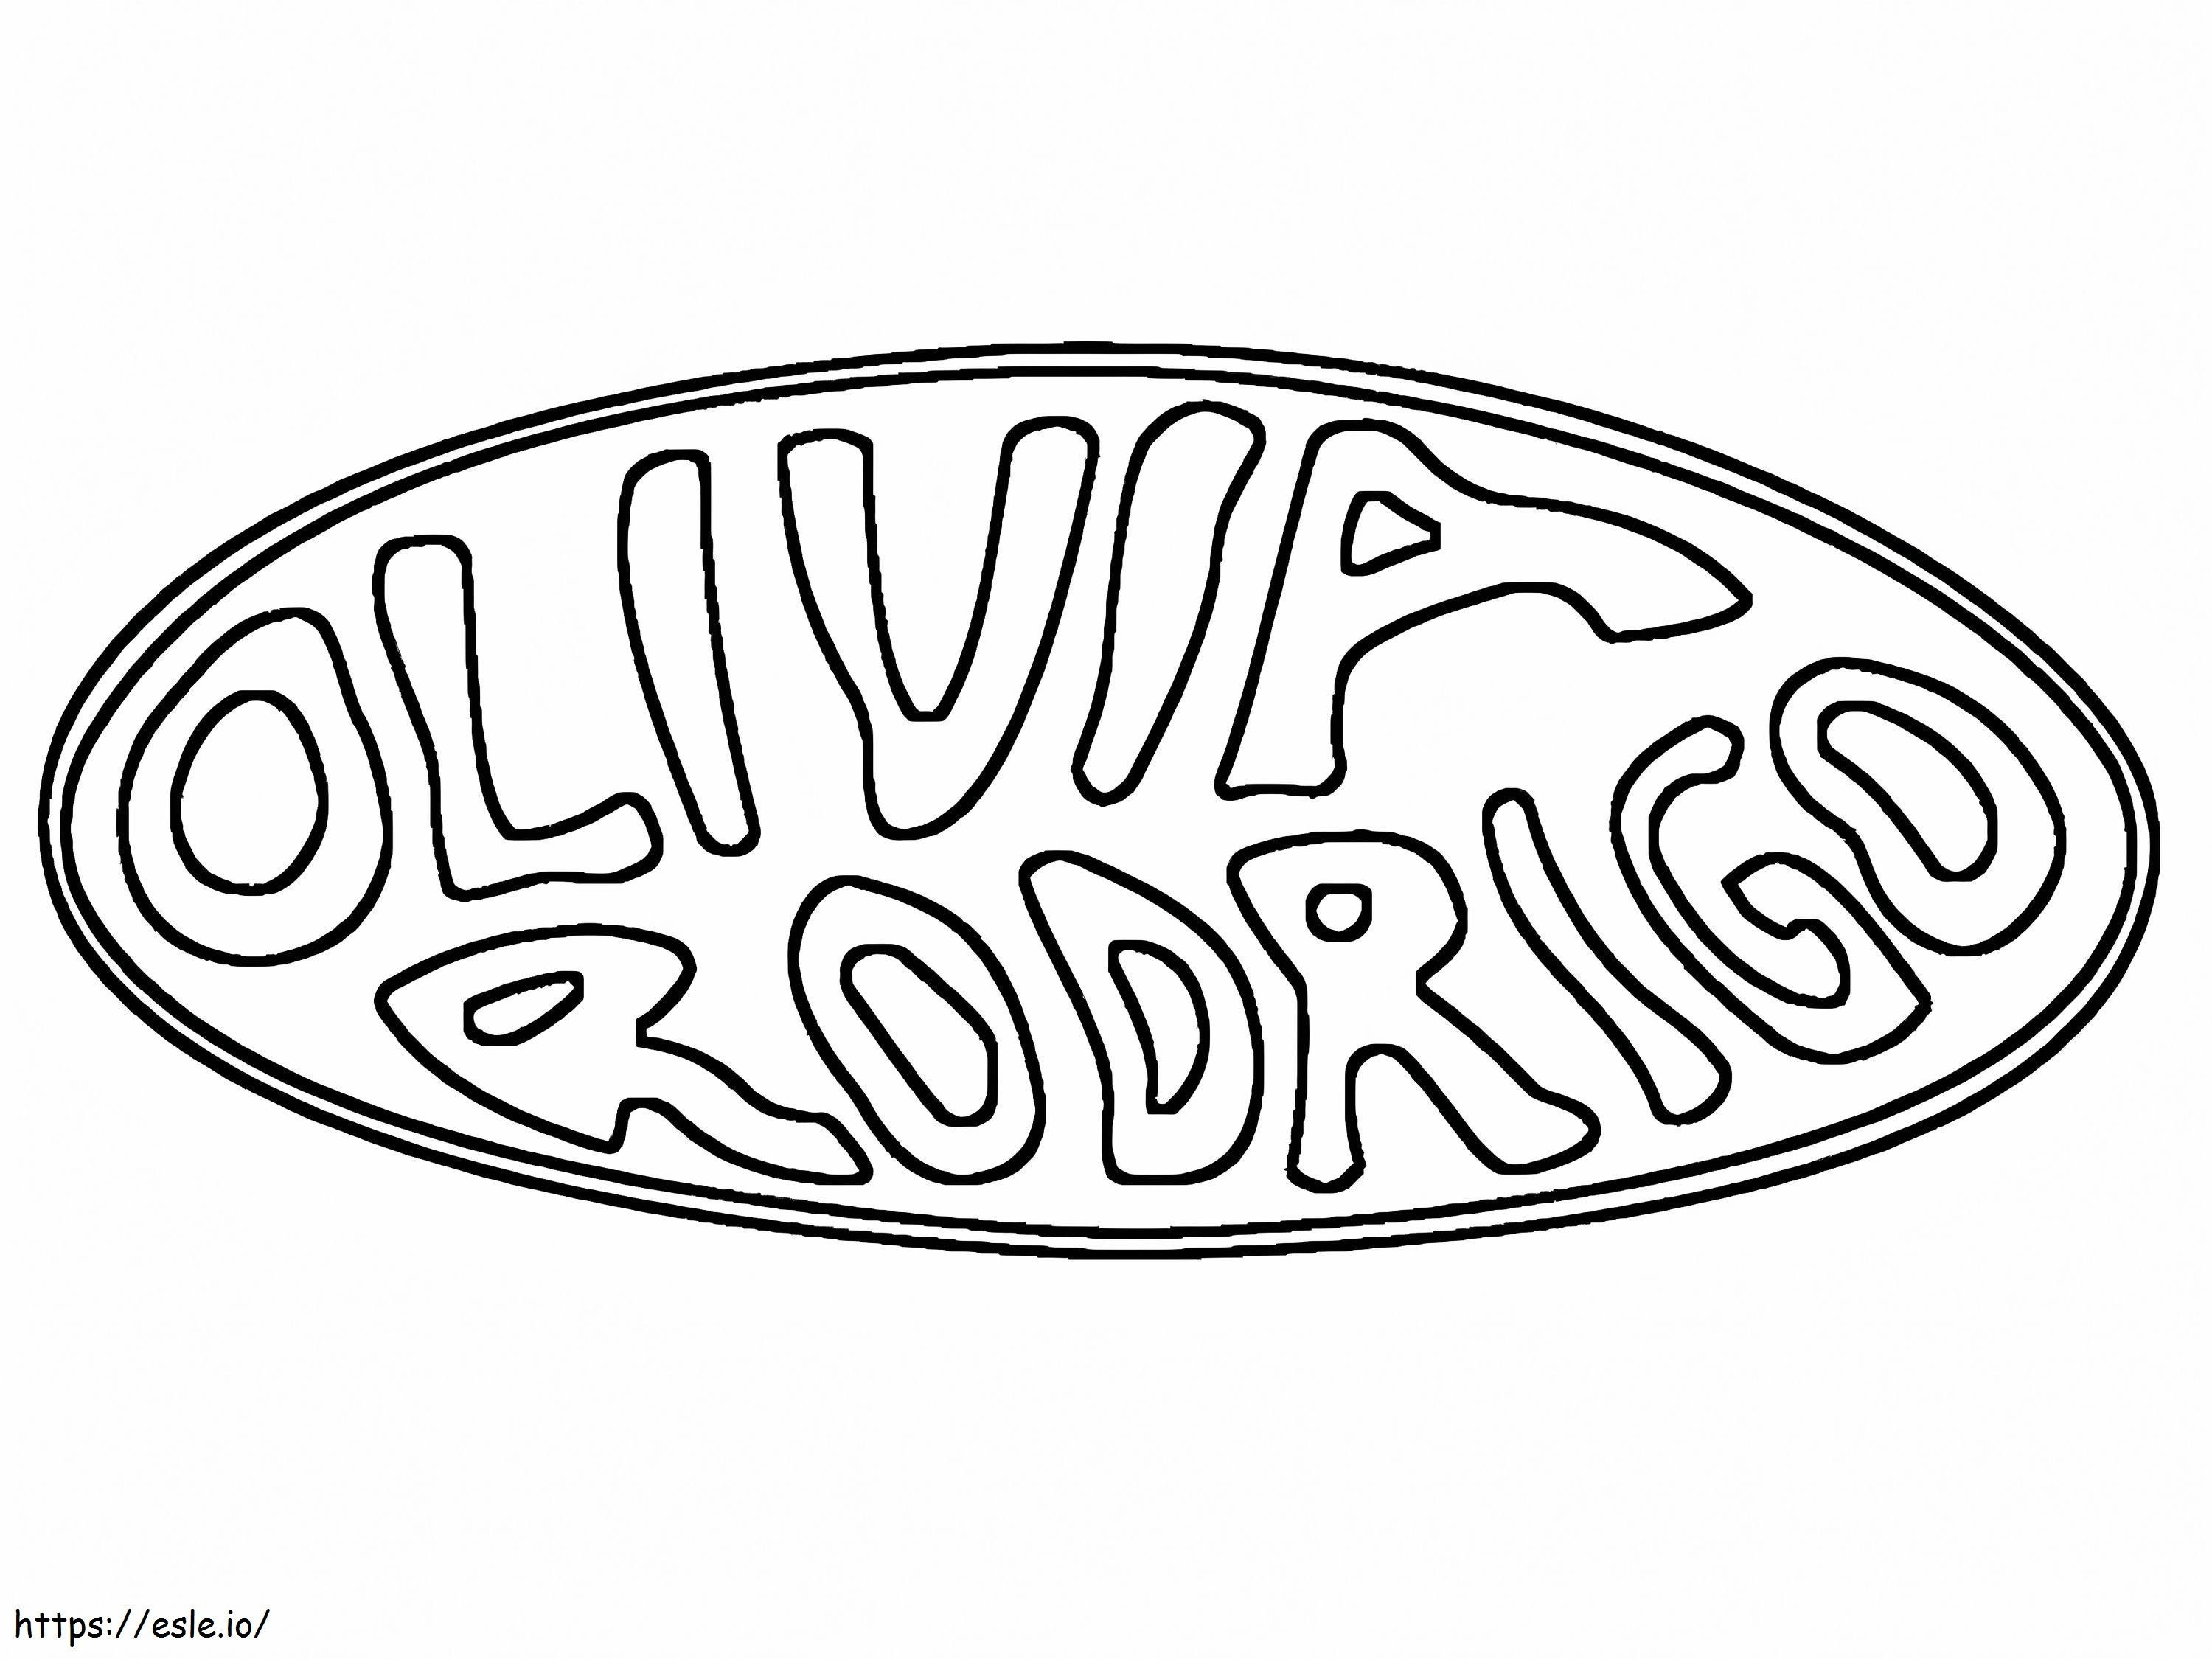 Logo Olivia Rodrigo da colorare